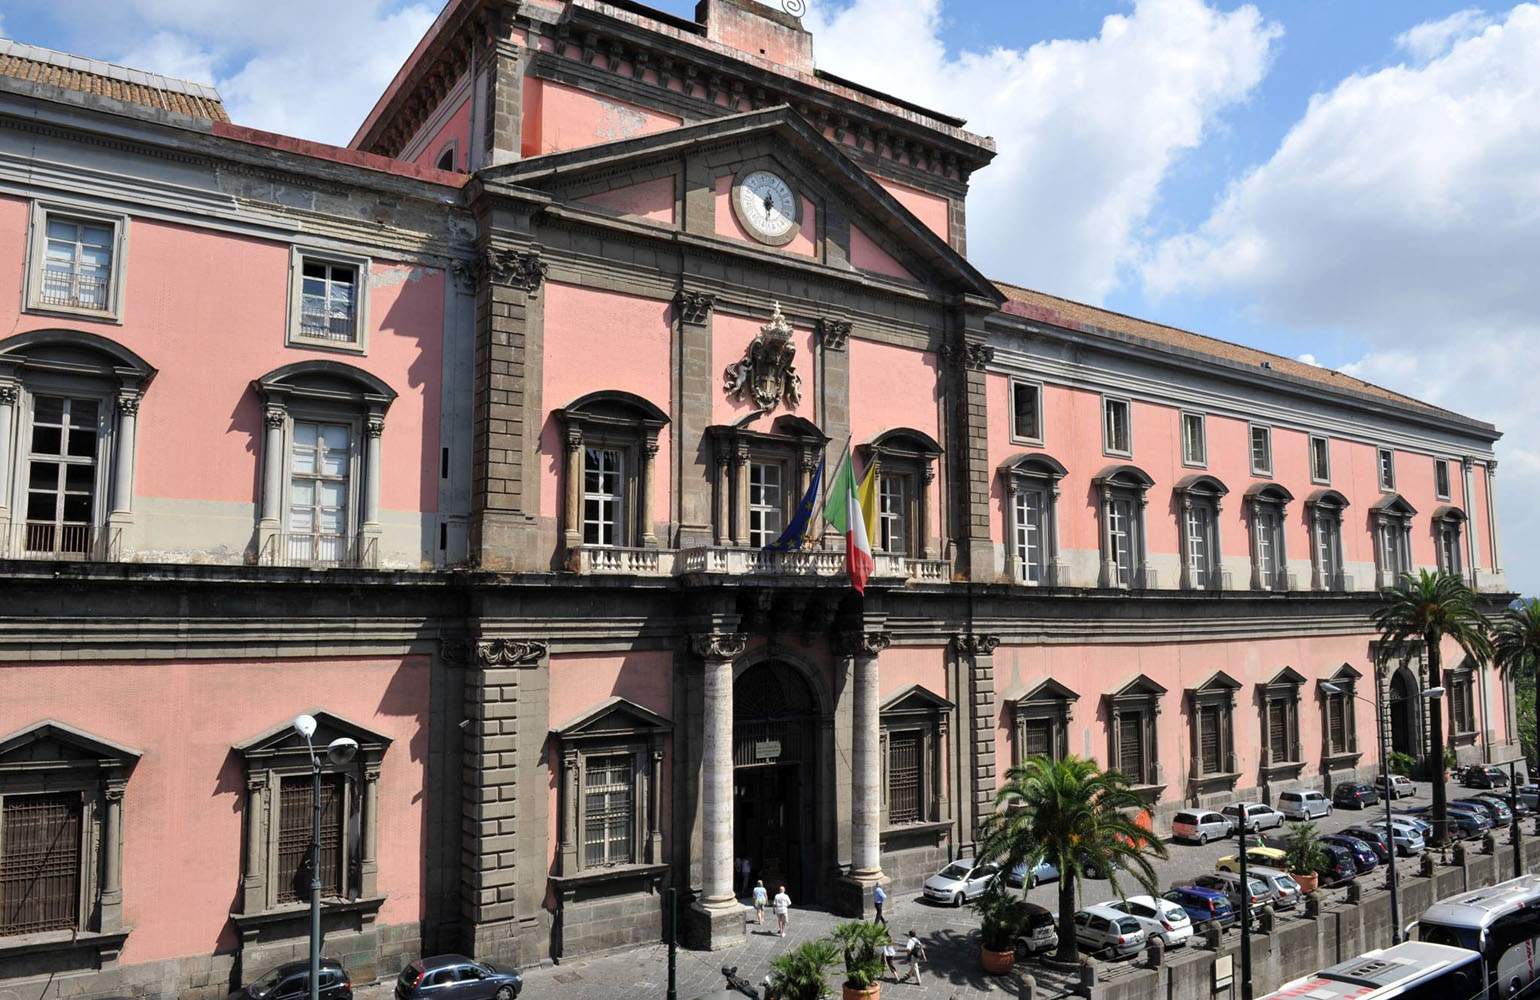 Naples, MANN signe des accords de valorisation avec l'Unione Industriali et le ministère public